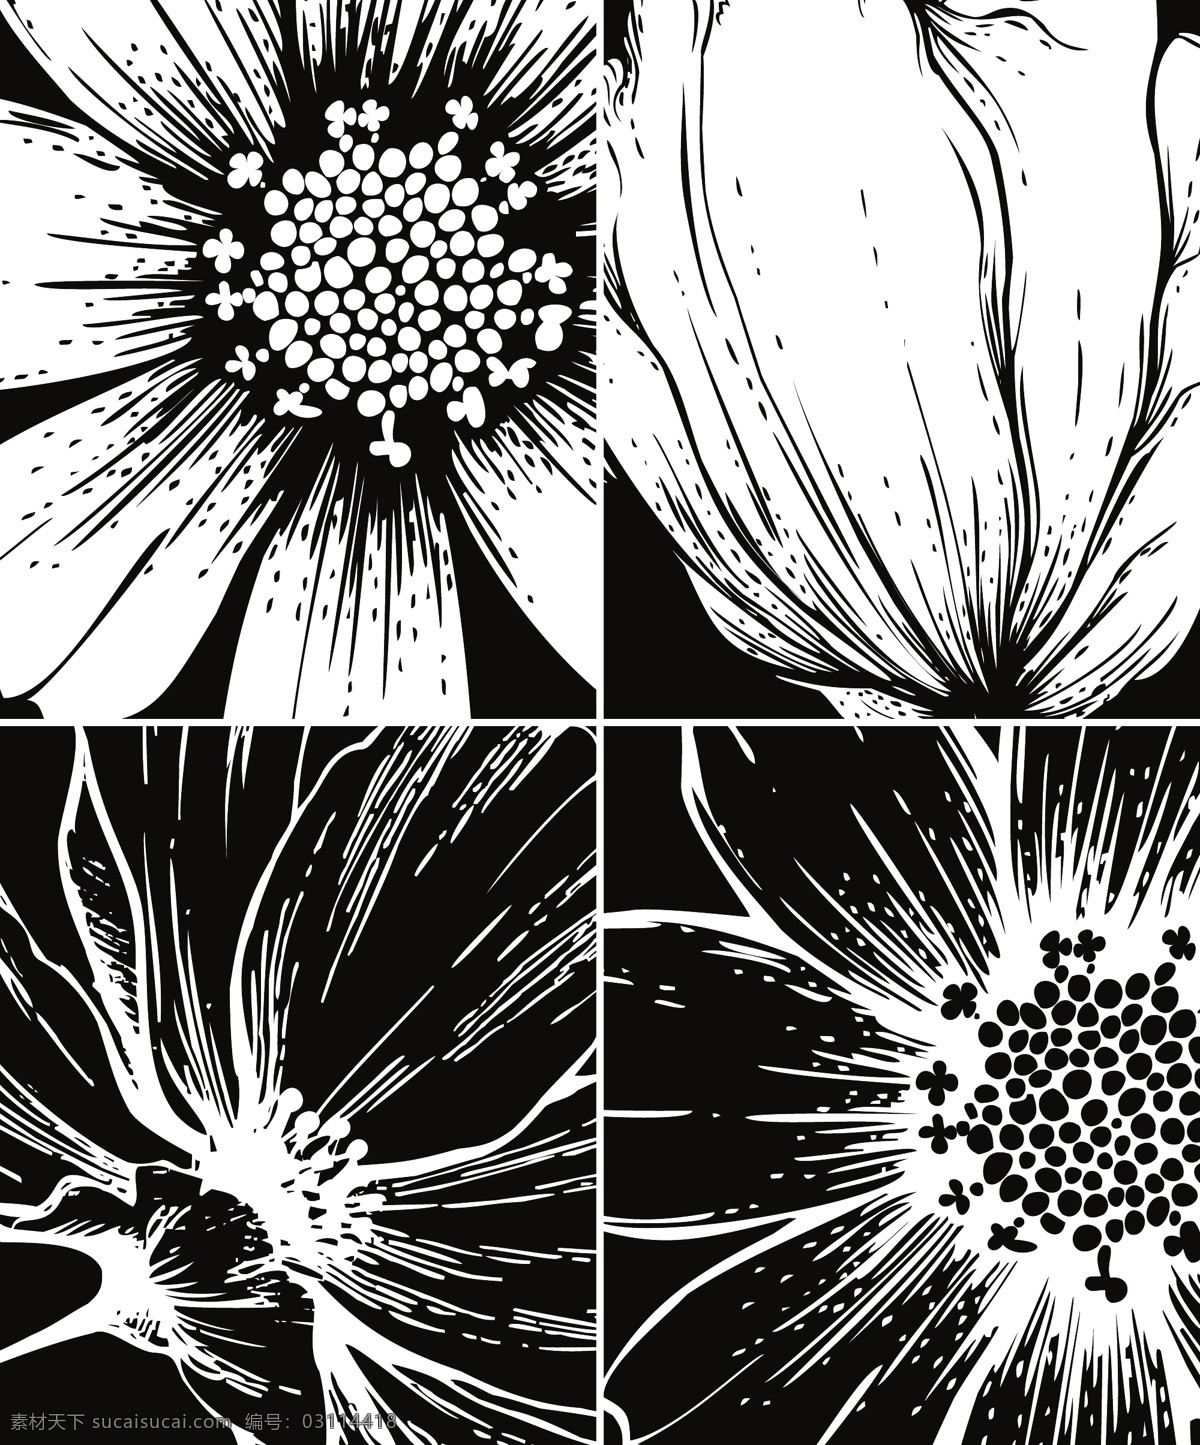 醒目 黑色 线条 花 载体 web 背景 插画 创意 免费 矢量花朵 图 图形 病 媒 生物 时尚 独特的 原始的 高质量 质量 新鲜的 白色 花朵 黑色的线 矢量图